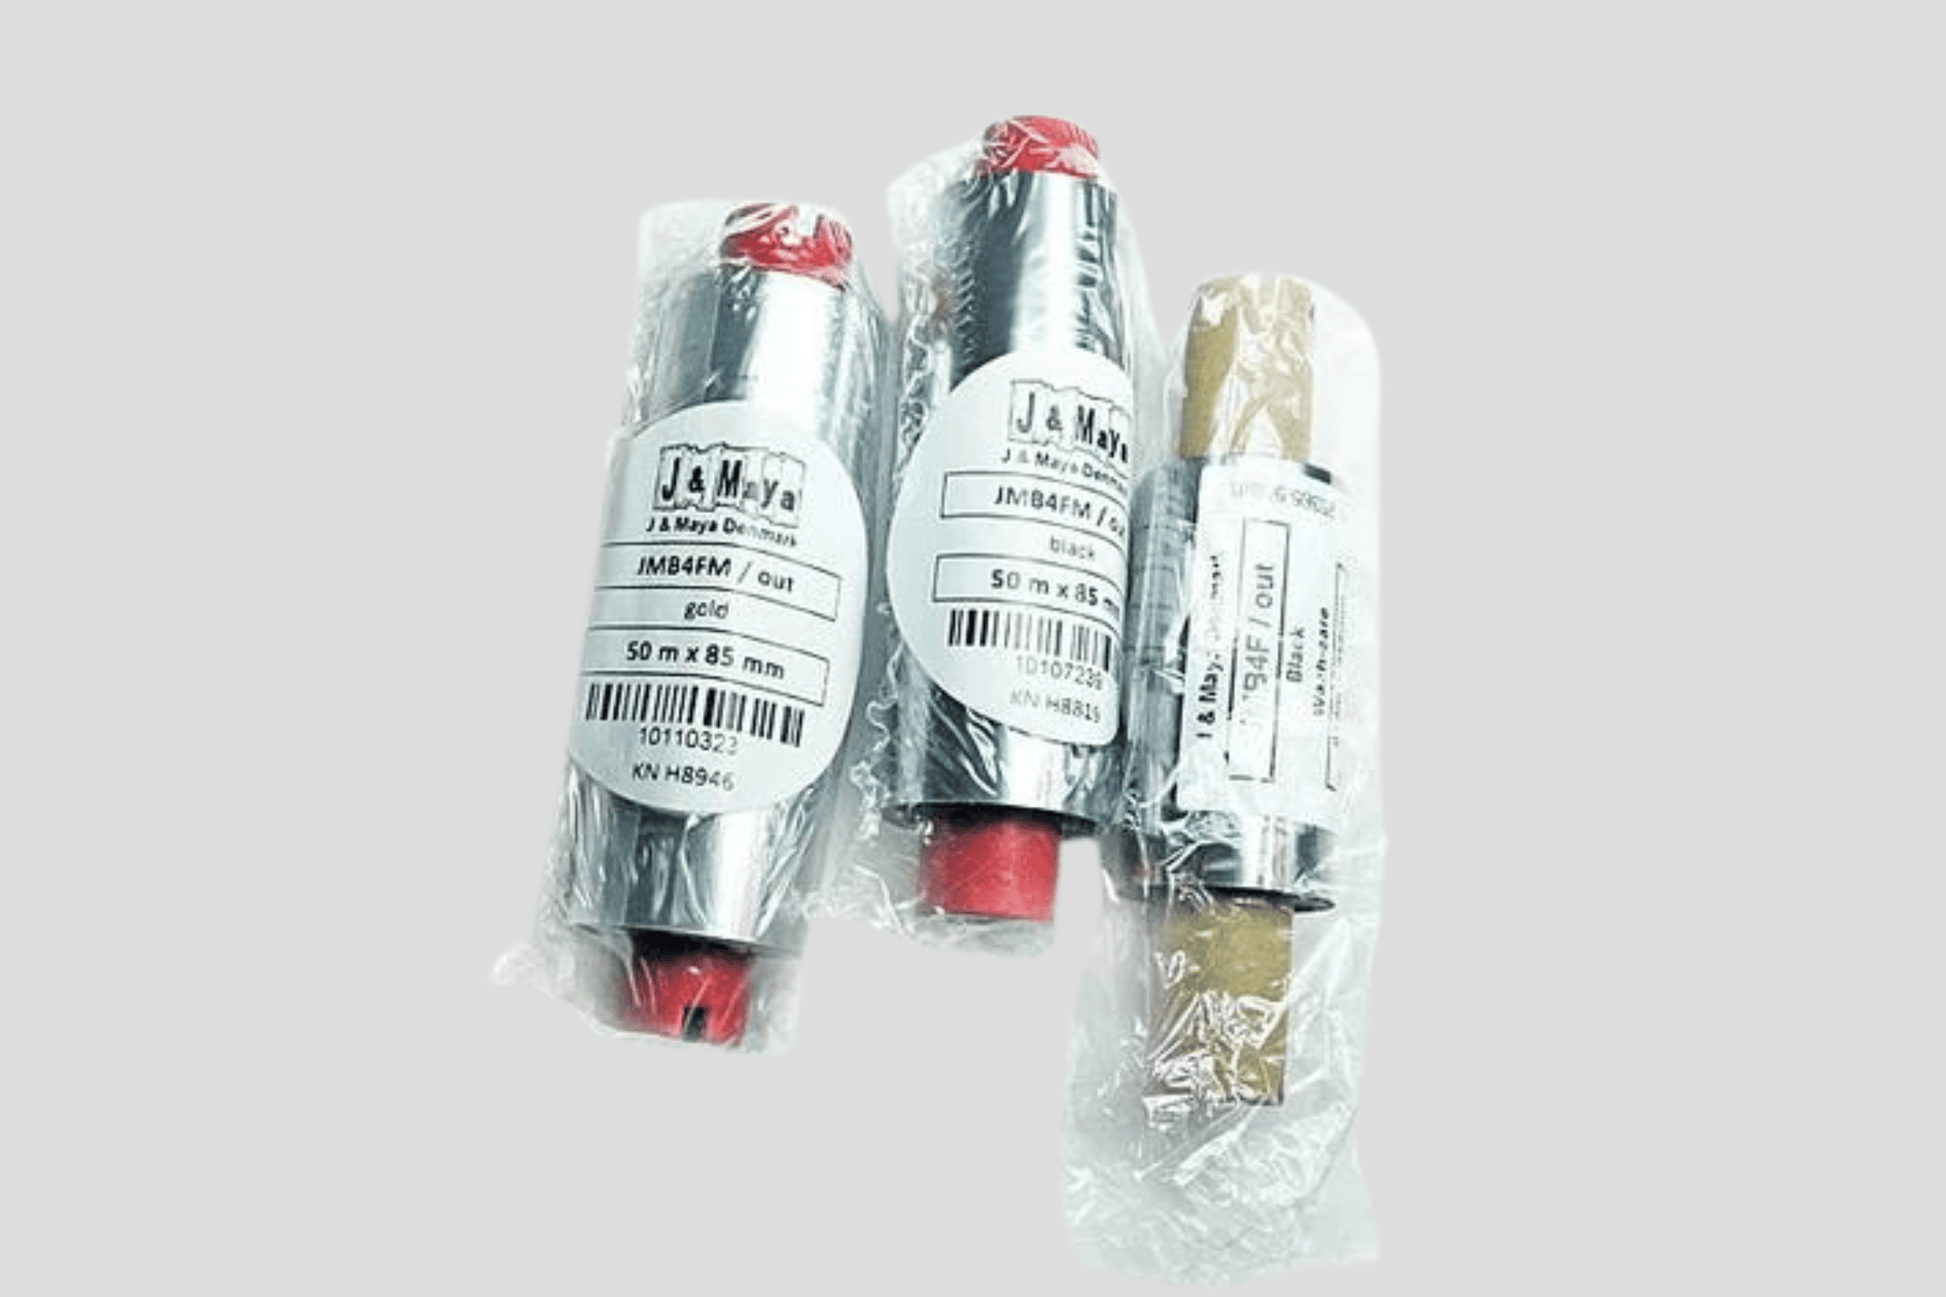 Tre JM Band NO plastpakker med røde og hvite etiketter på, som inneholder Folier for termiske overføring FZ.